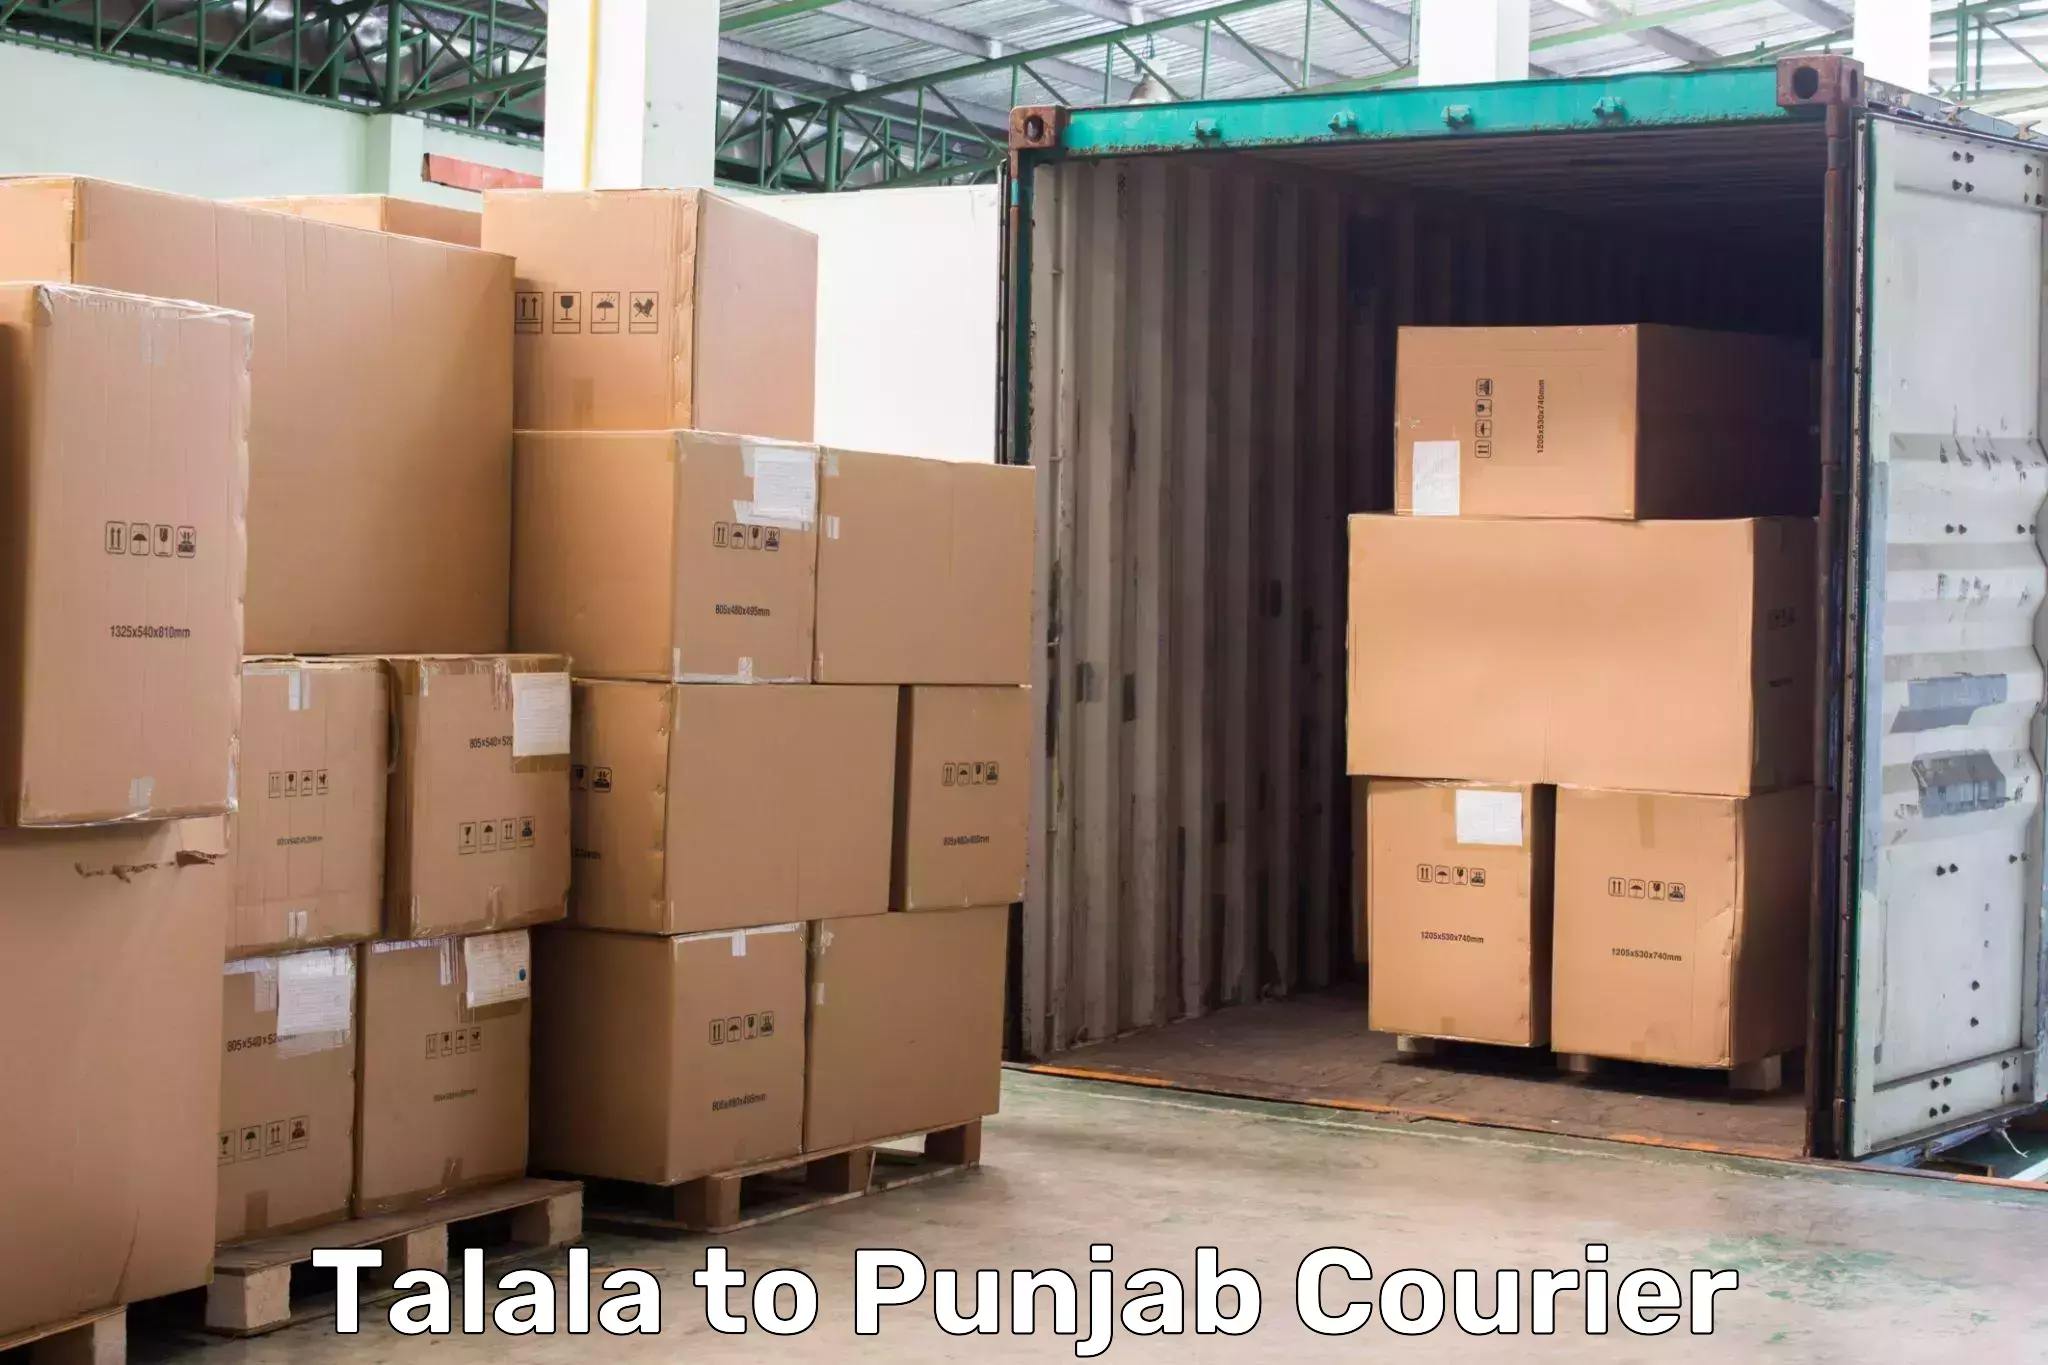 Express postal services Talala to Khanna